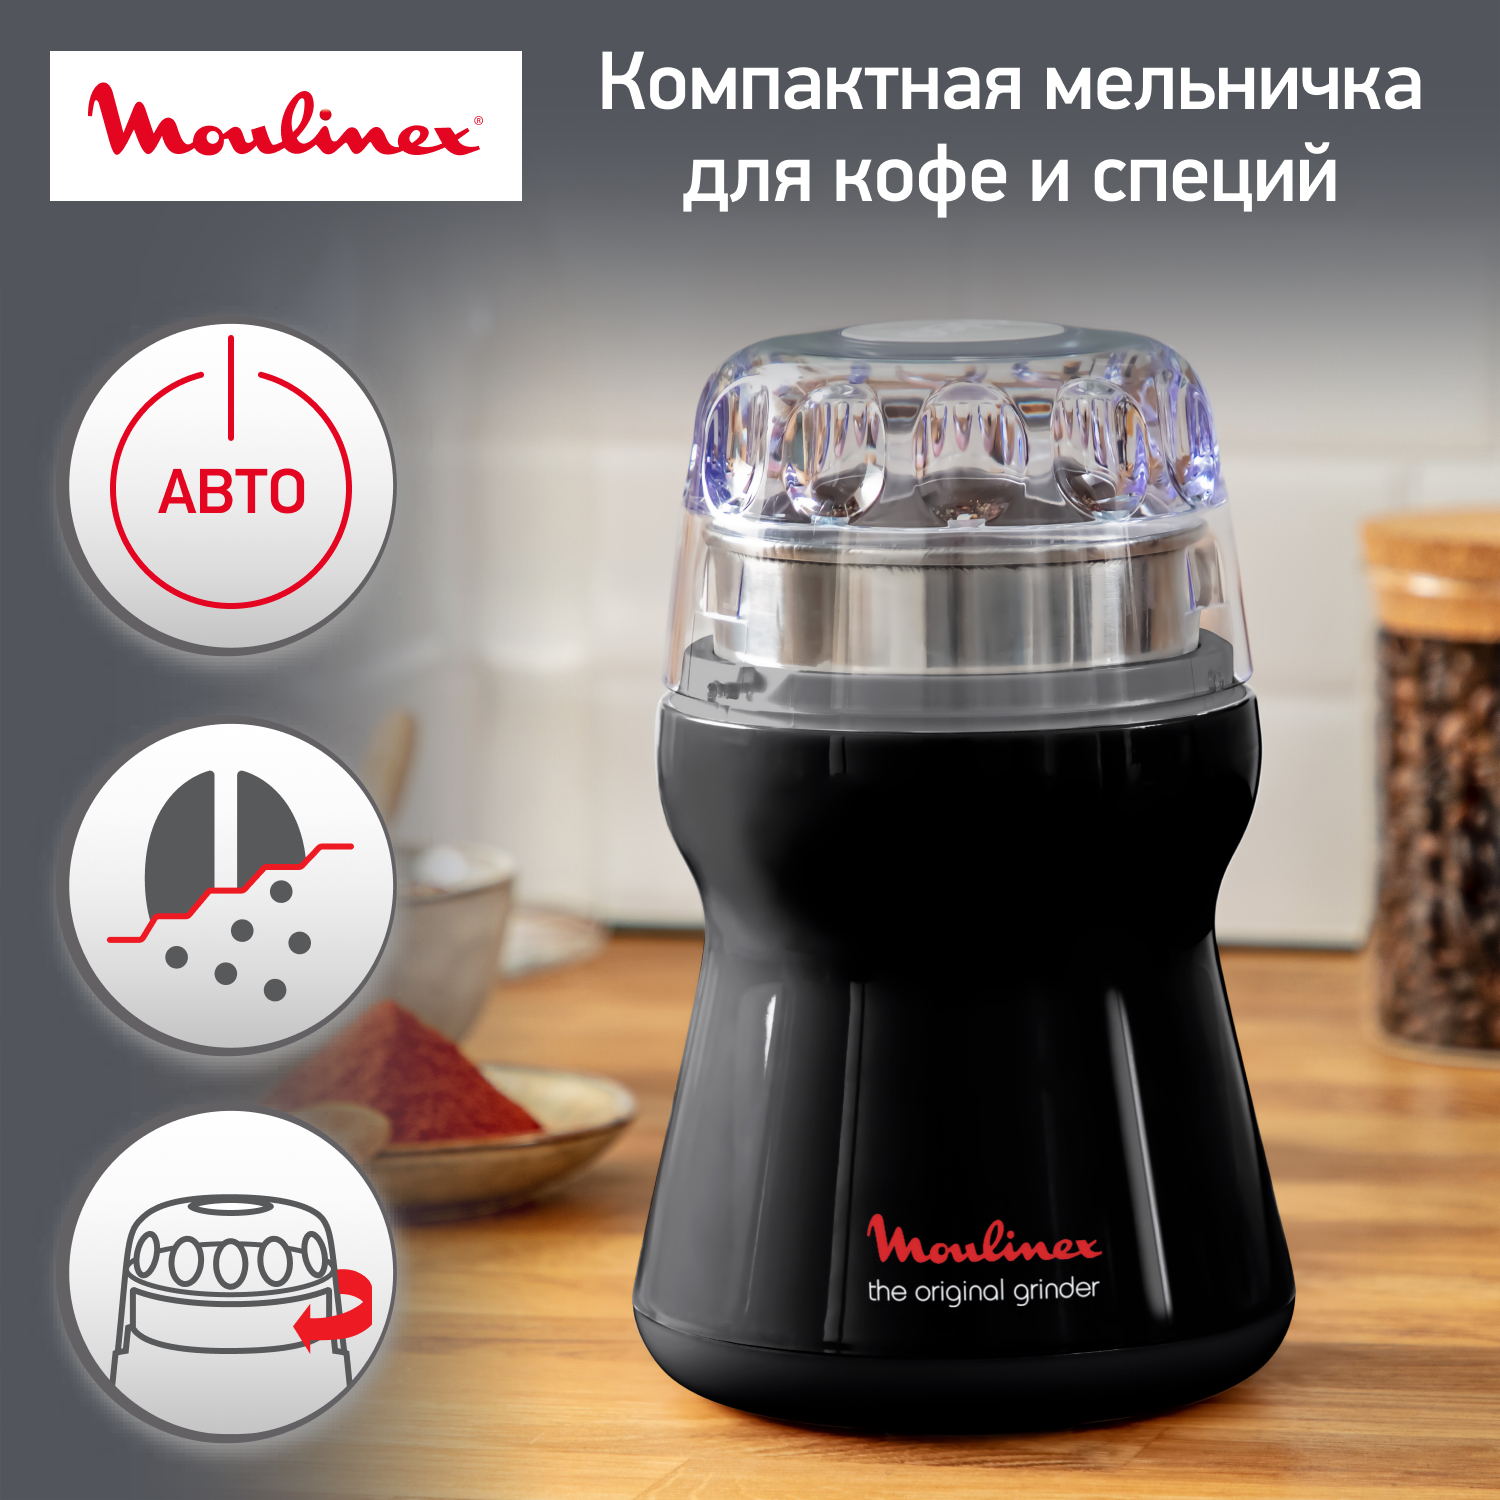 Кофемолка Moulinex The Original Grinder AR110830, черный кофемолка krups coffee grinder gx204d10 серебристый